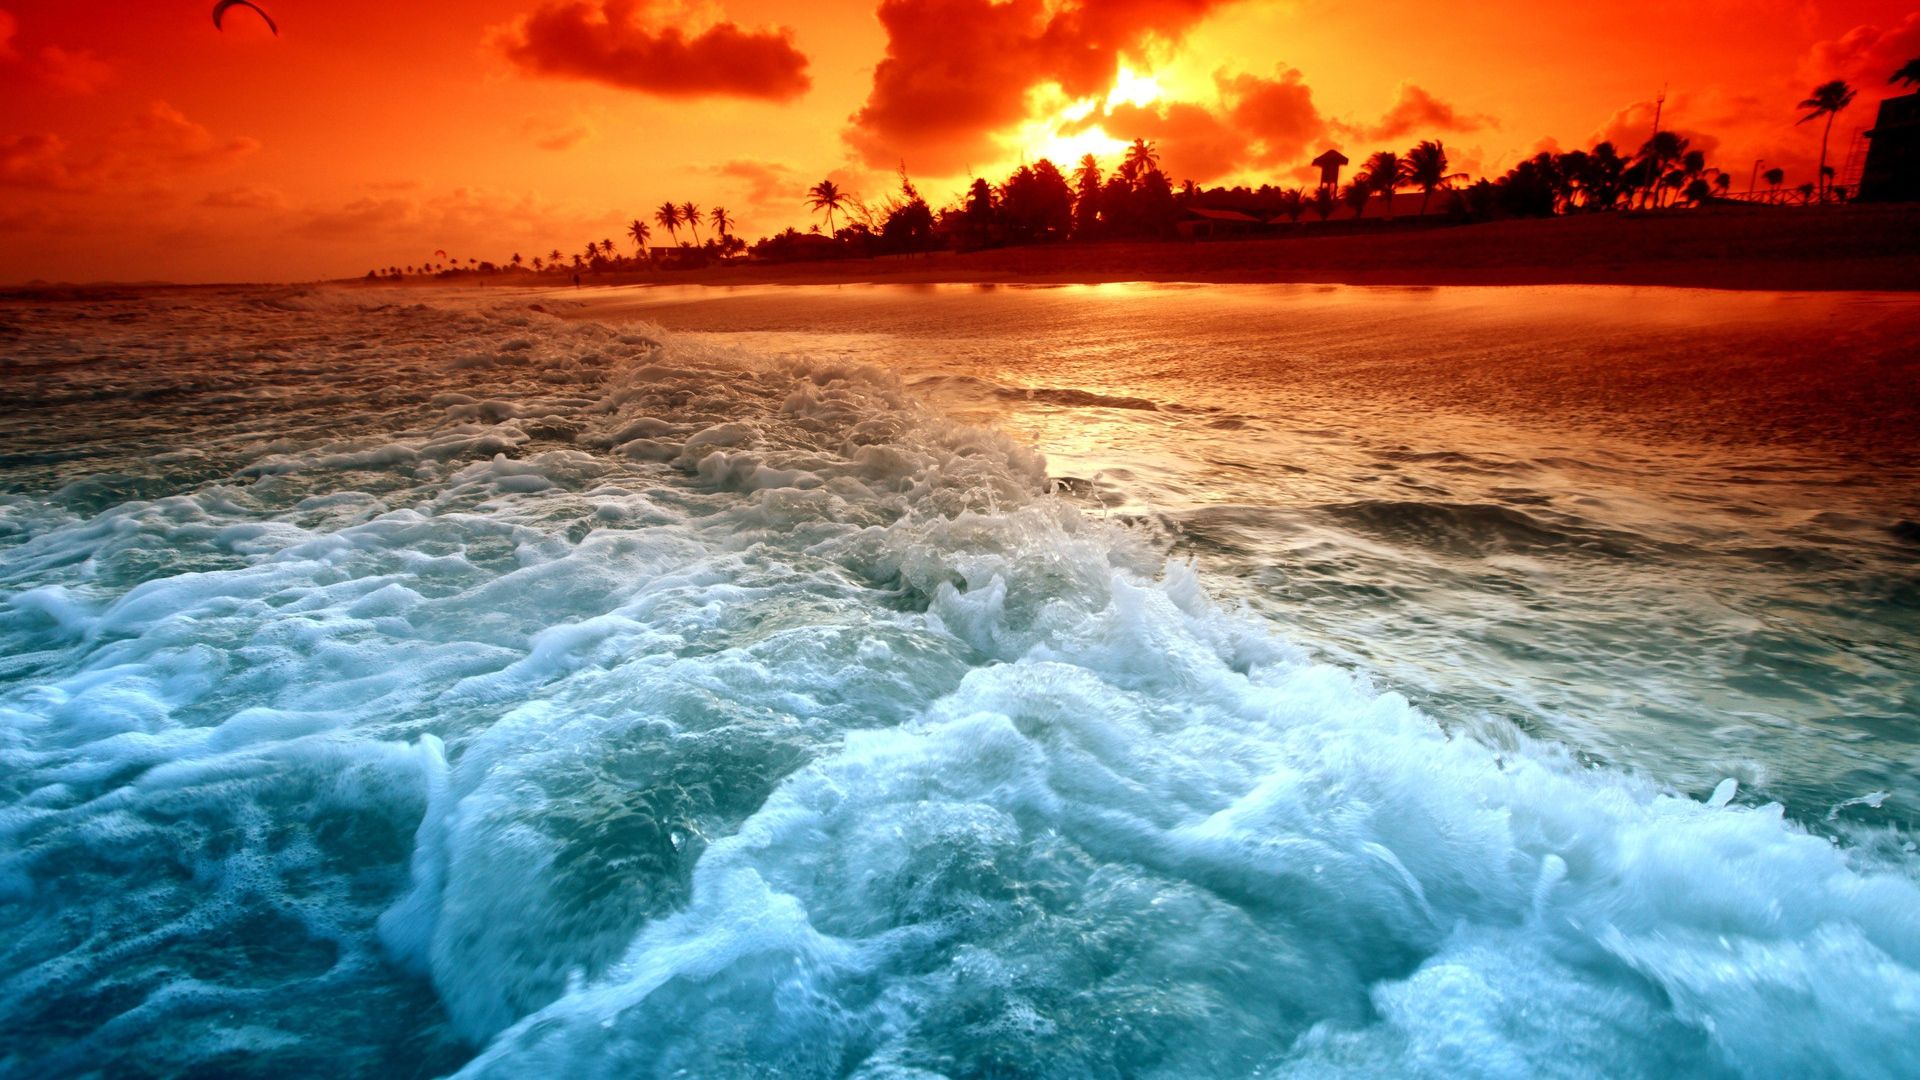 Download 1920x1080 HD Wallpaper maldives ocean beach sunset